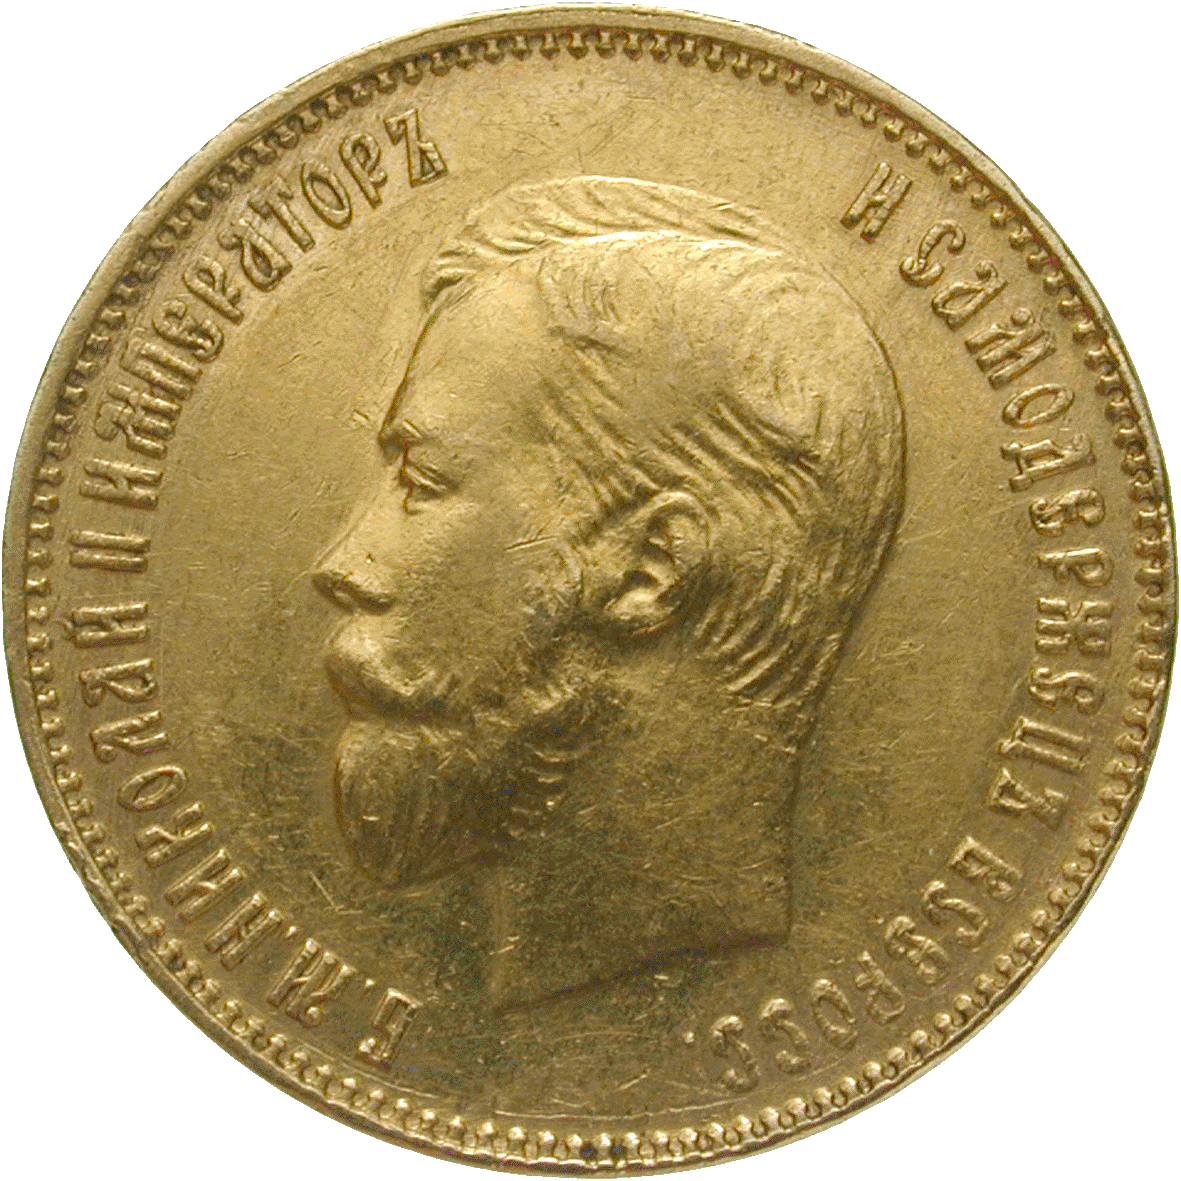 Russian Empire, Nicholas II 10 Rubles 1911 (obverse)